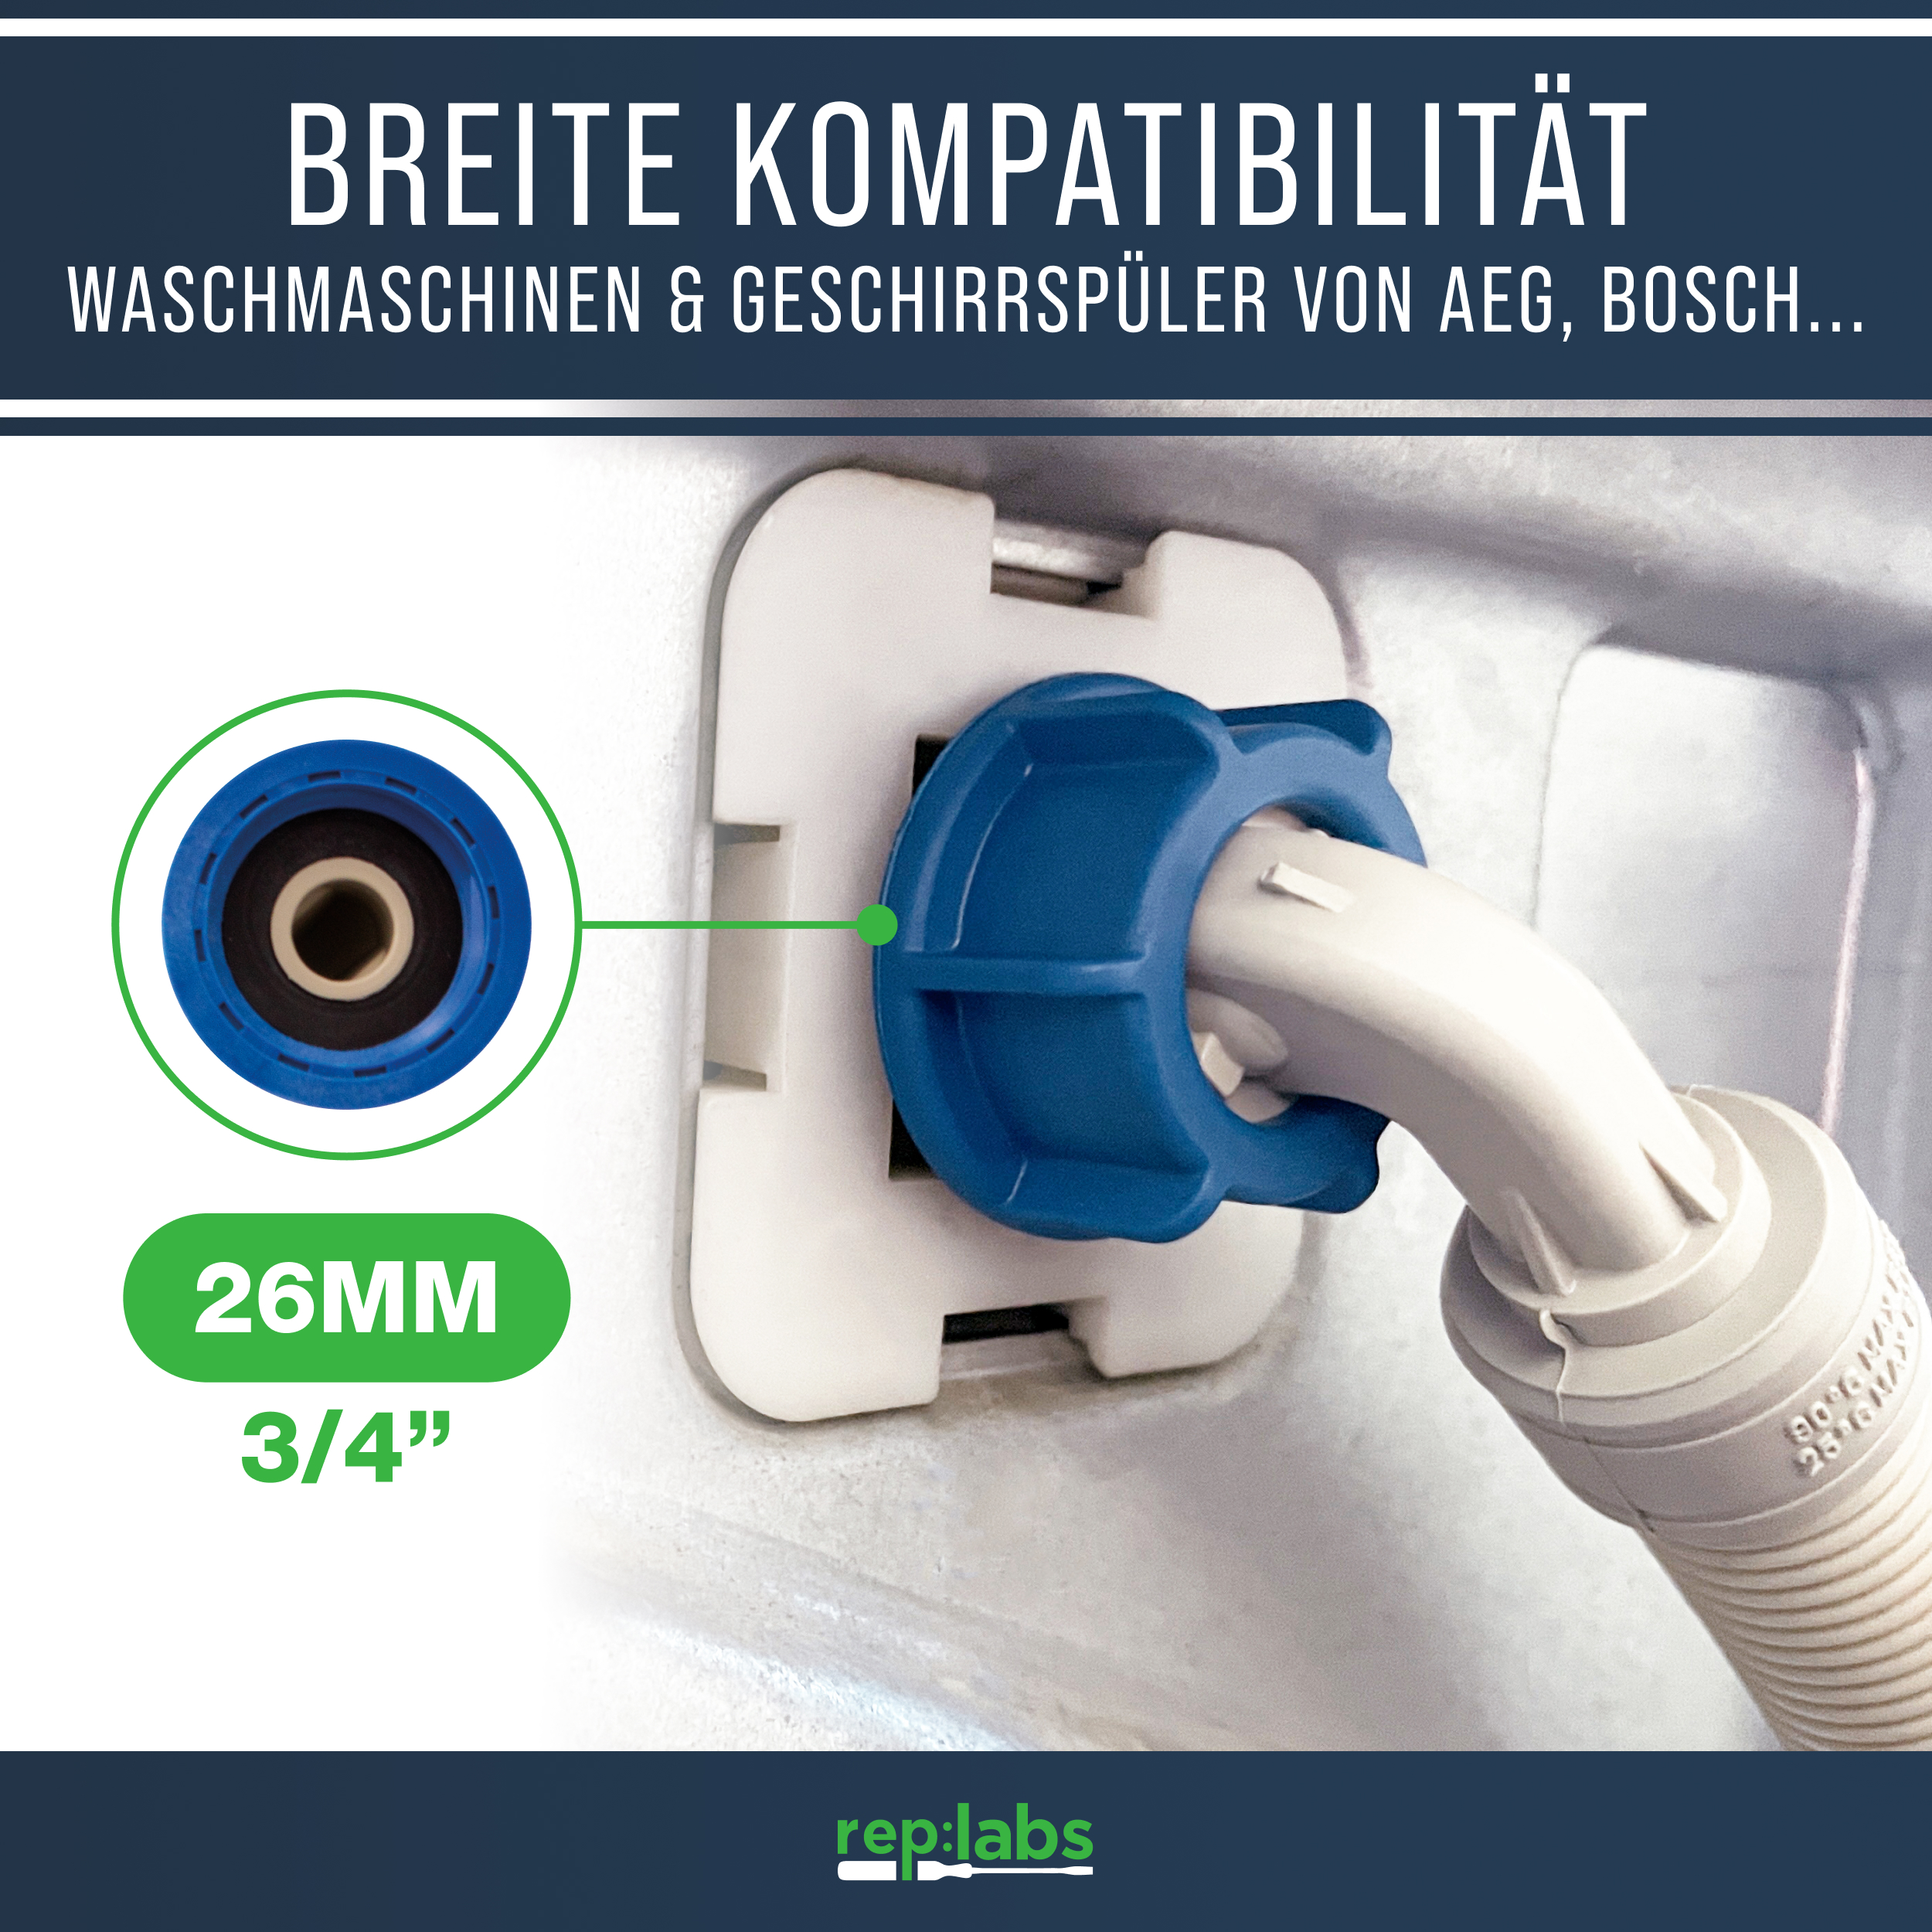 Zulaufschlauch Aquastopschlauch 3,0m - Universaler Sicherheitsschlauch für Waschmaschine und Geschirrspüler bis 90°C 